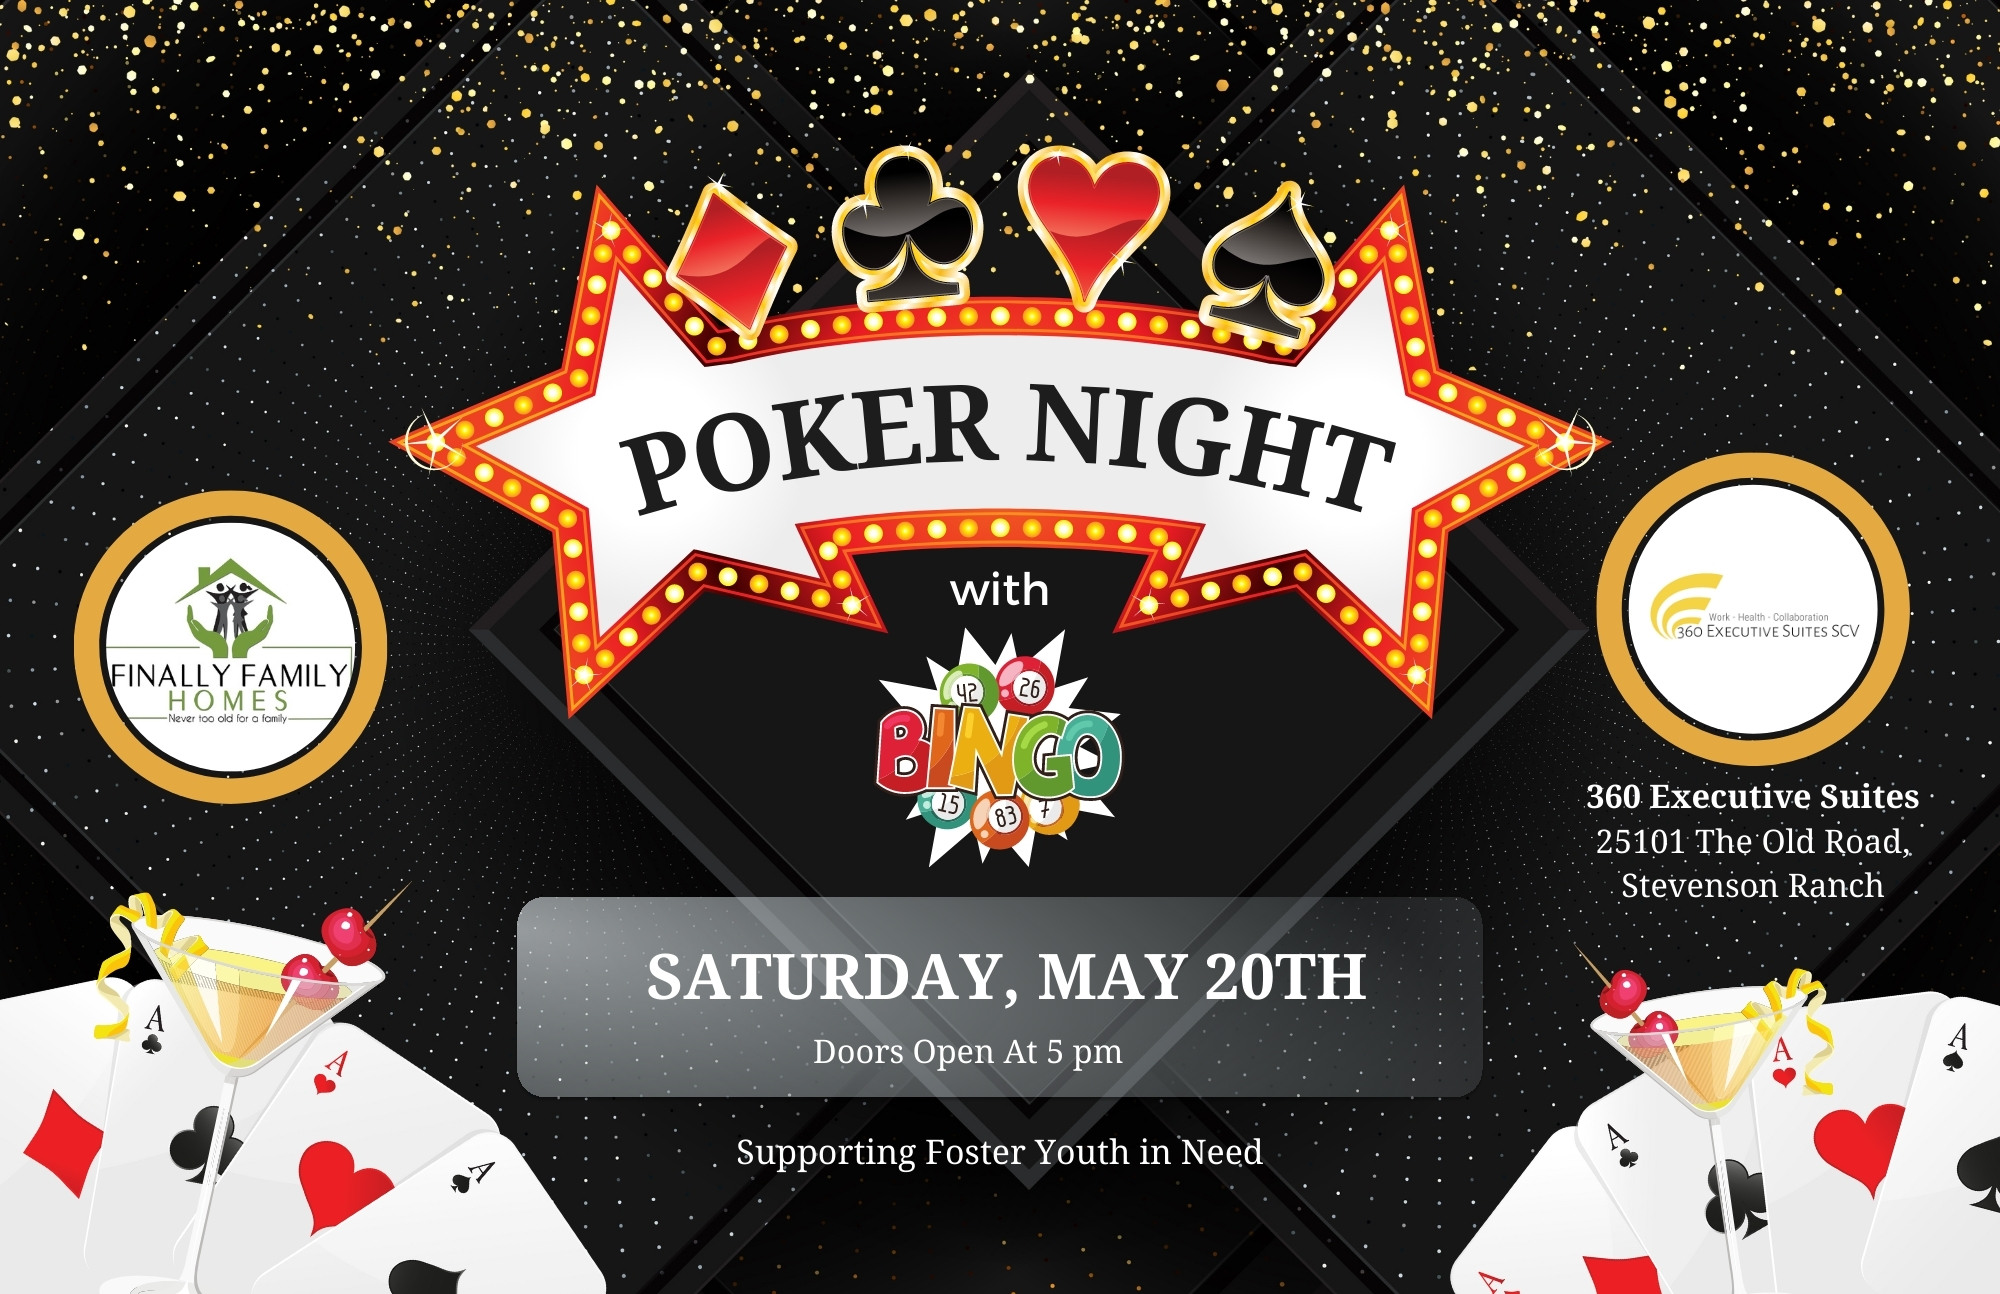 Poker and Bingo Night Tourament image